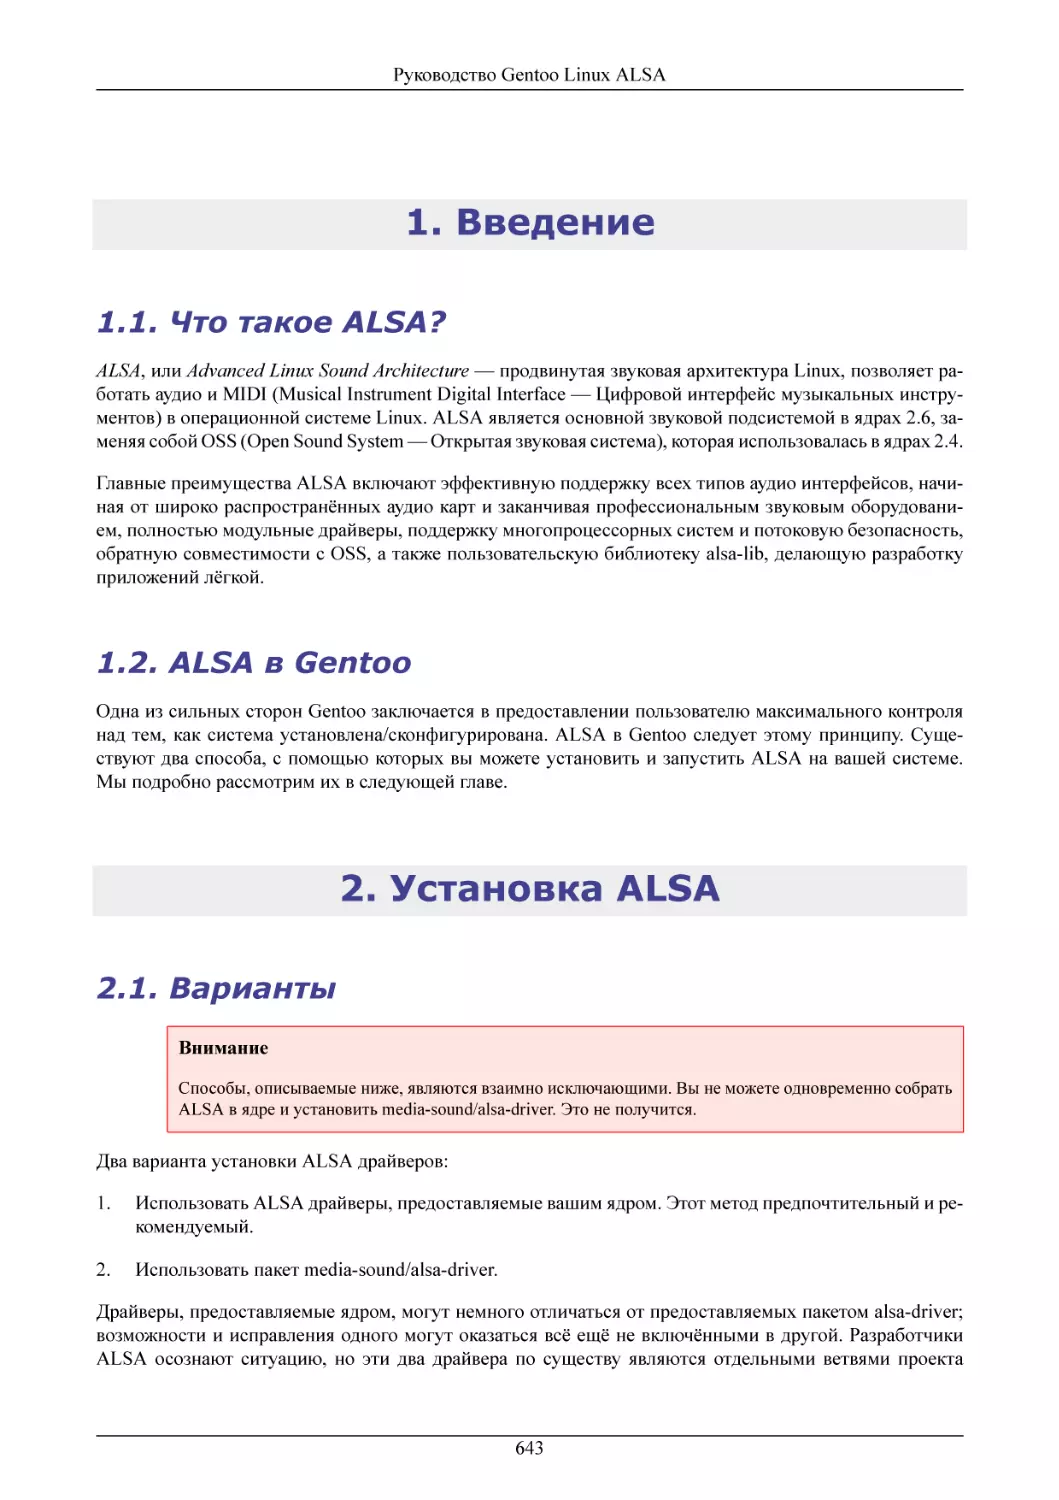 Введение
Что такое ALSA?
ALSA в Gentoo
Установка ALSA
Варианты